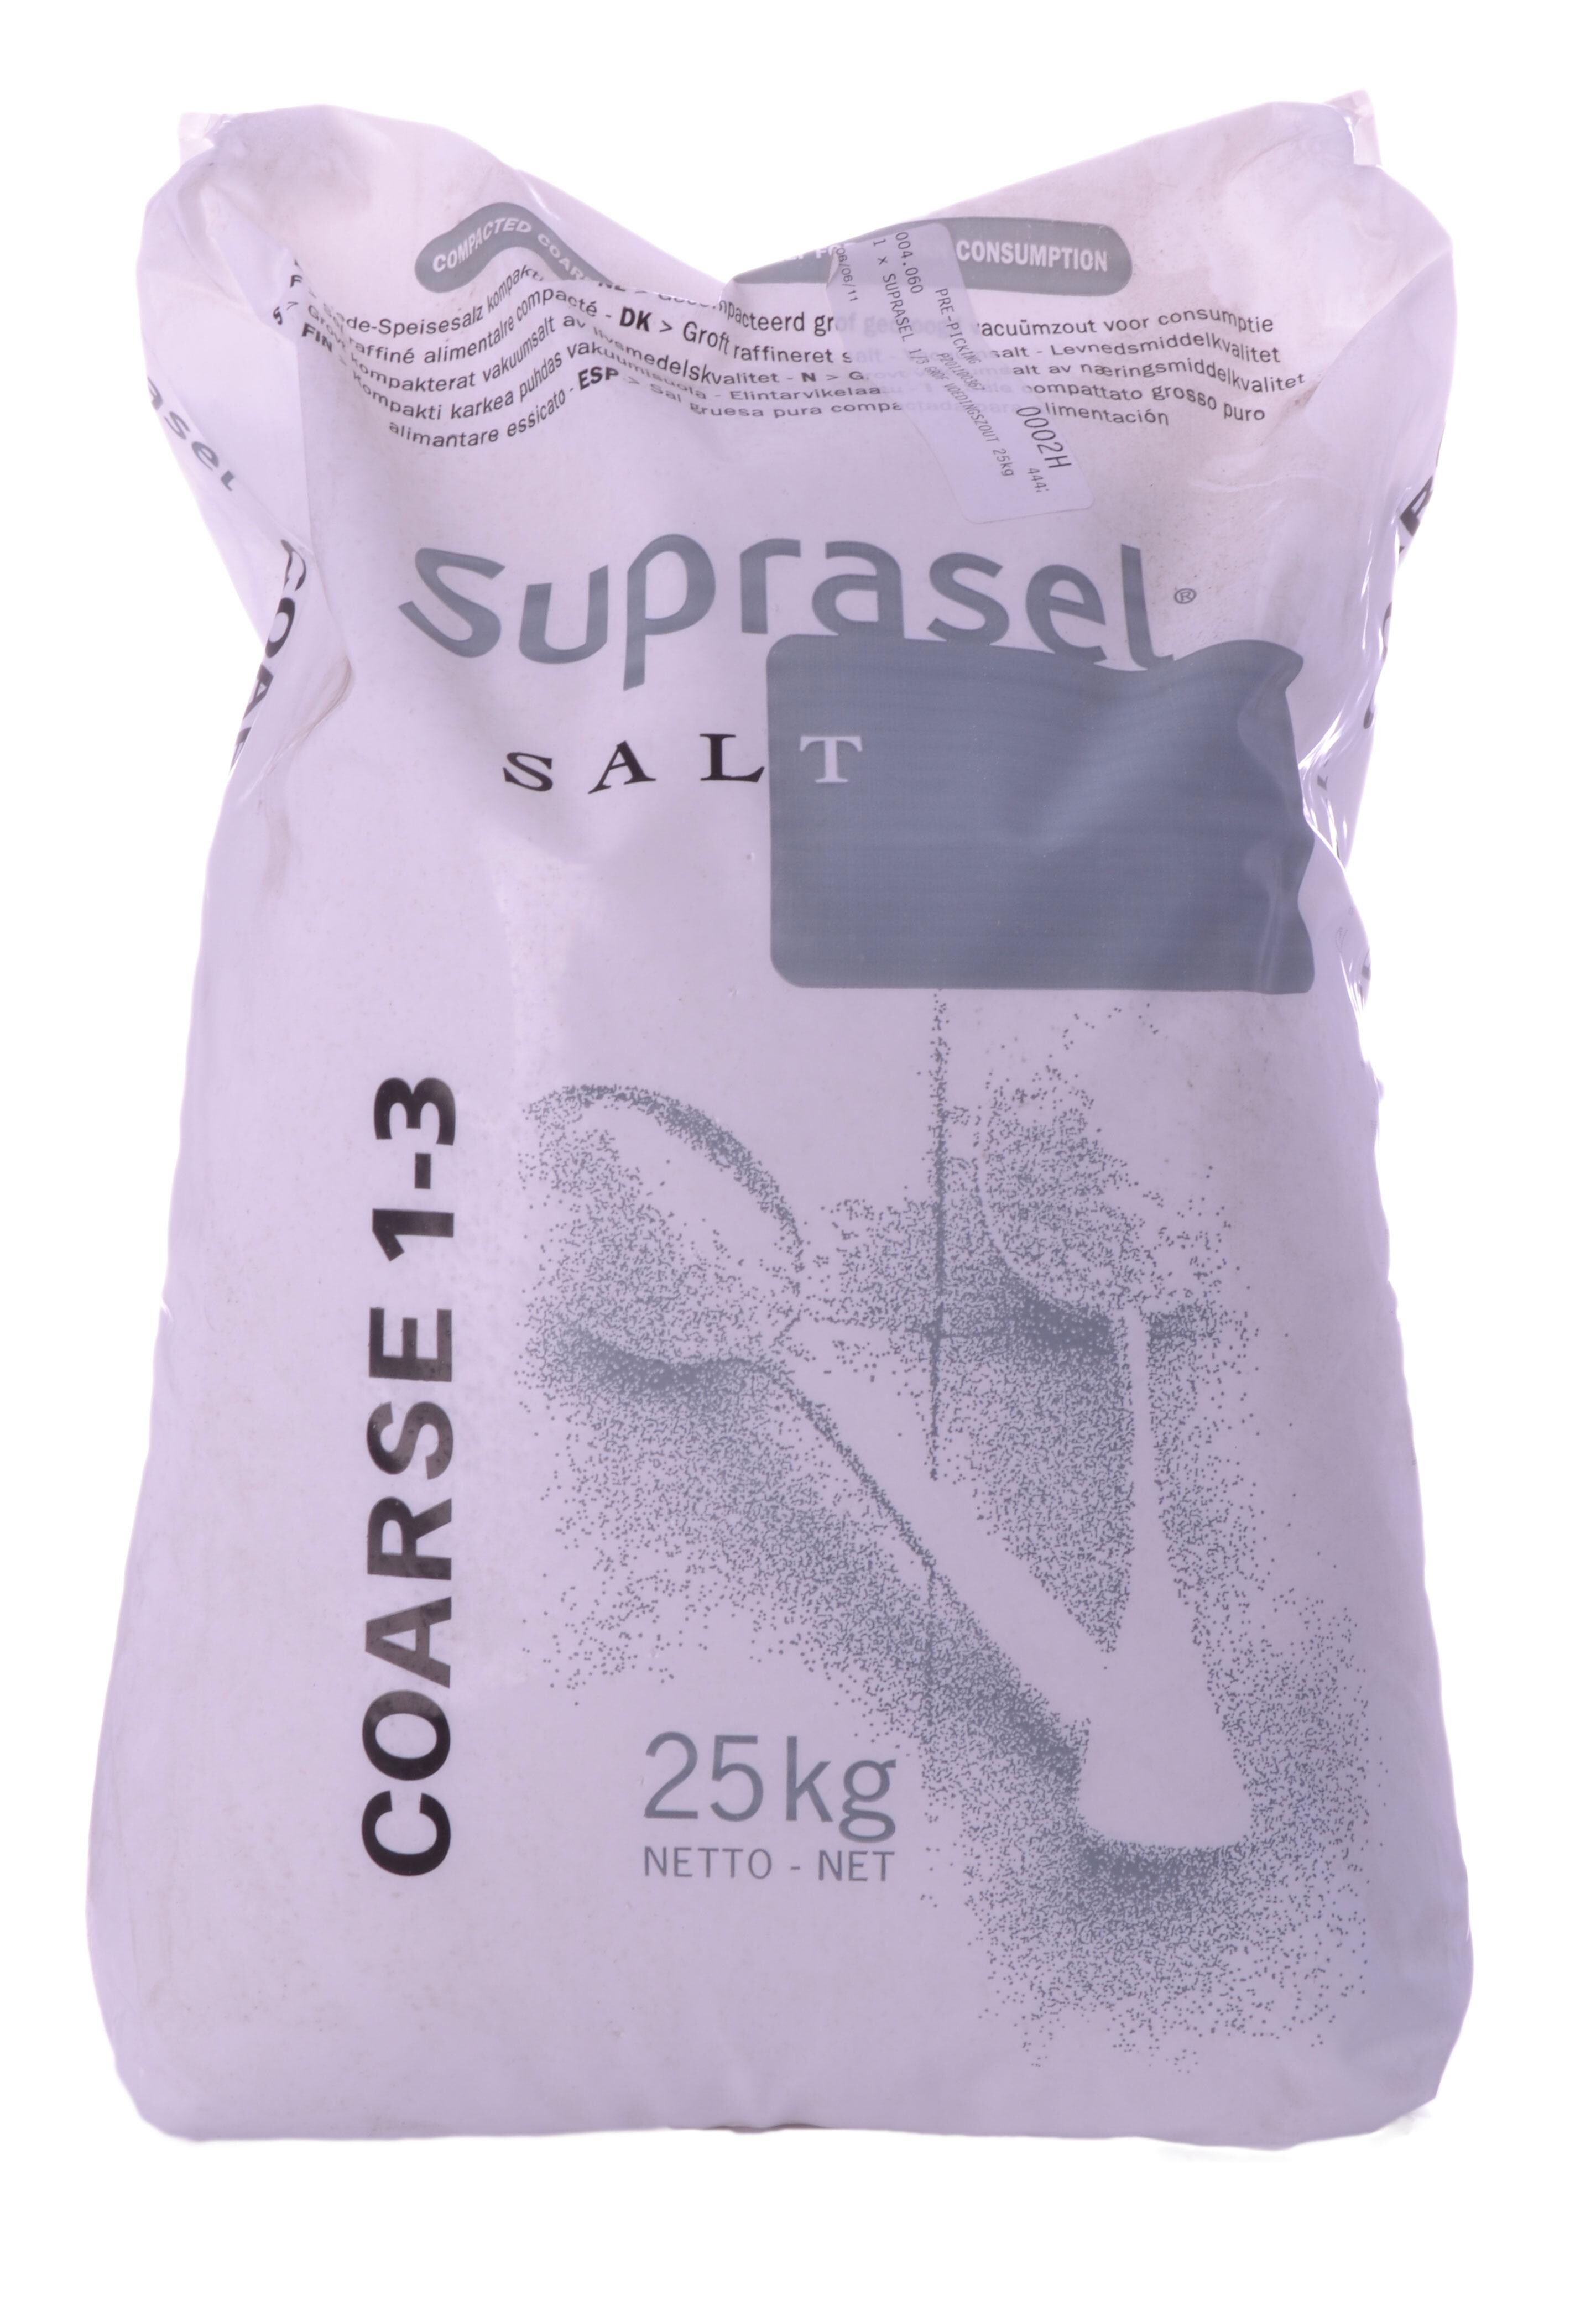 Suprasel salt 1/3 25kg Coarse 1-3